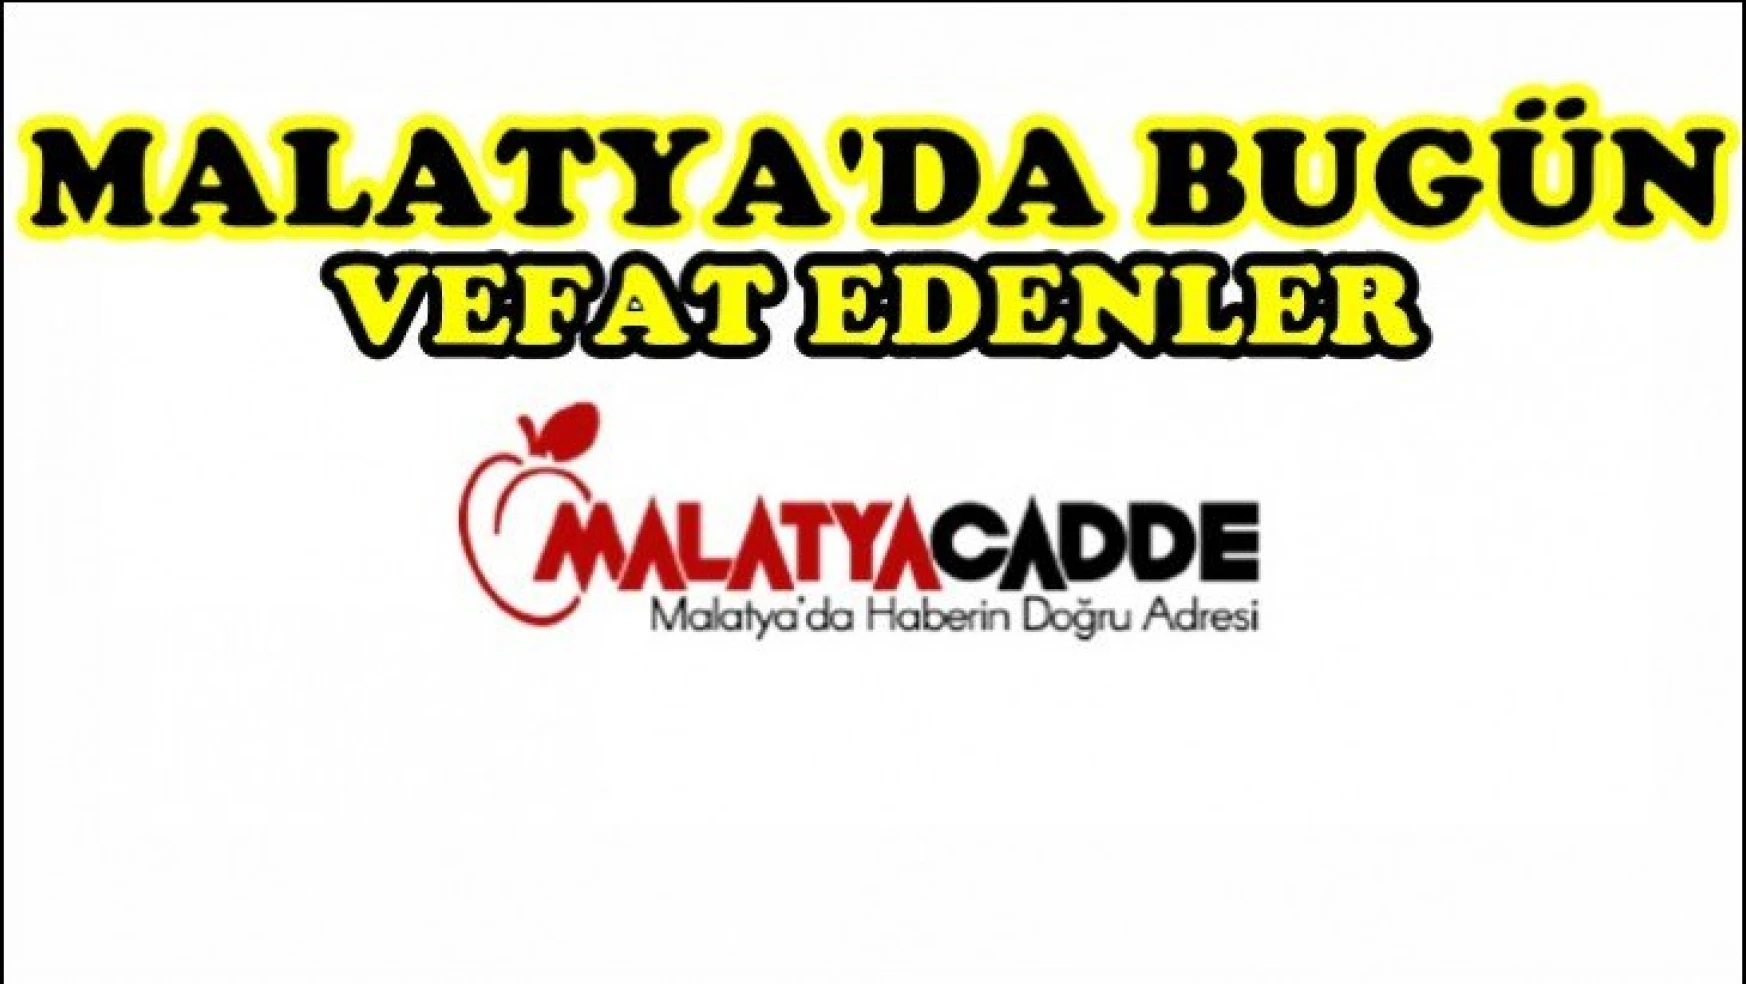 Malatya'da Bugün 22 Kişi Vefat Etti